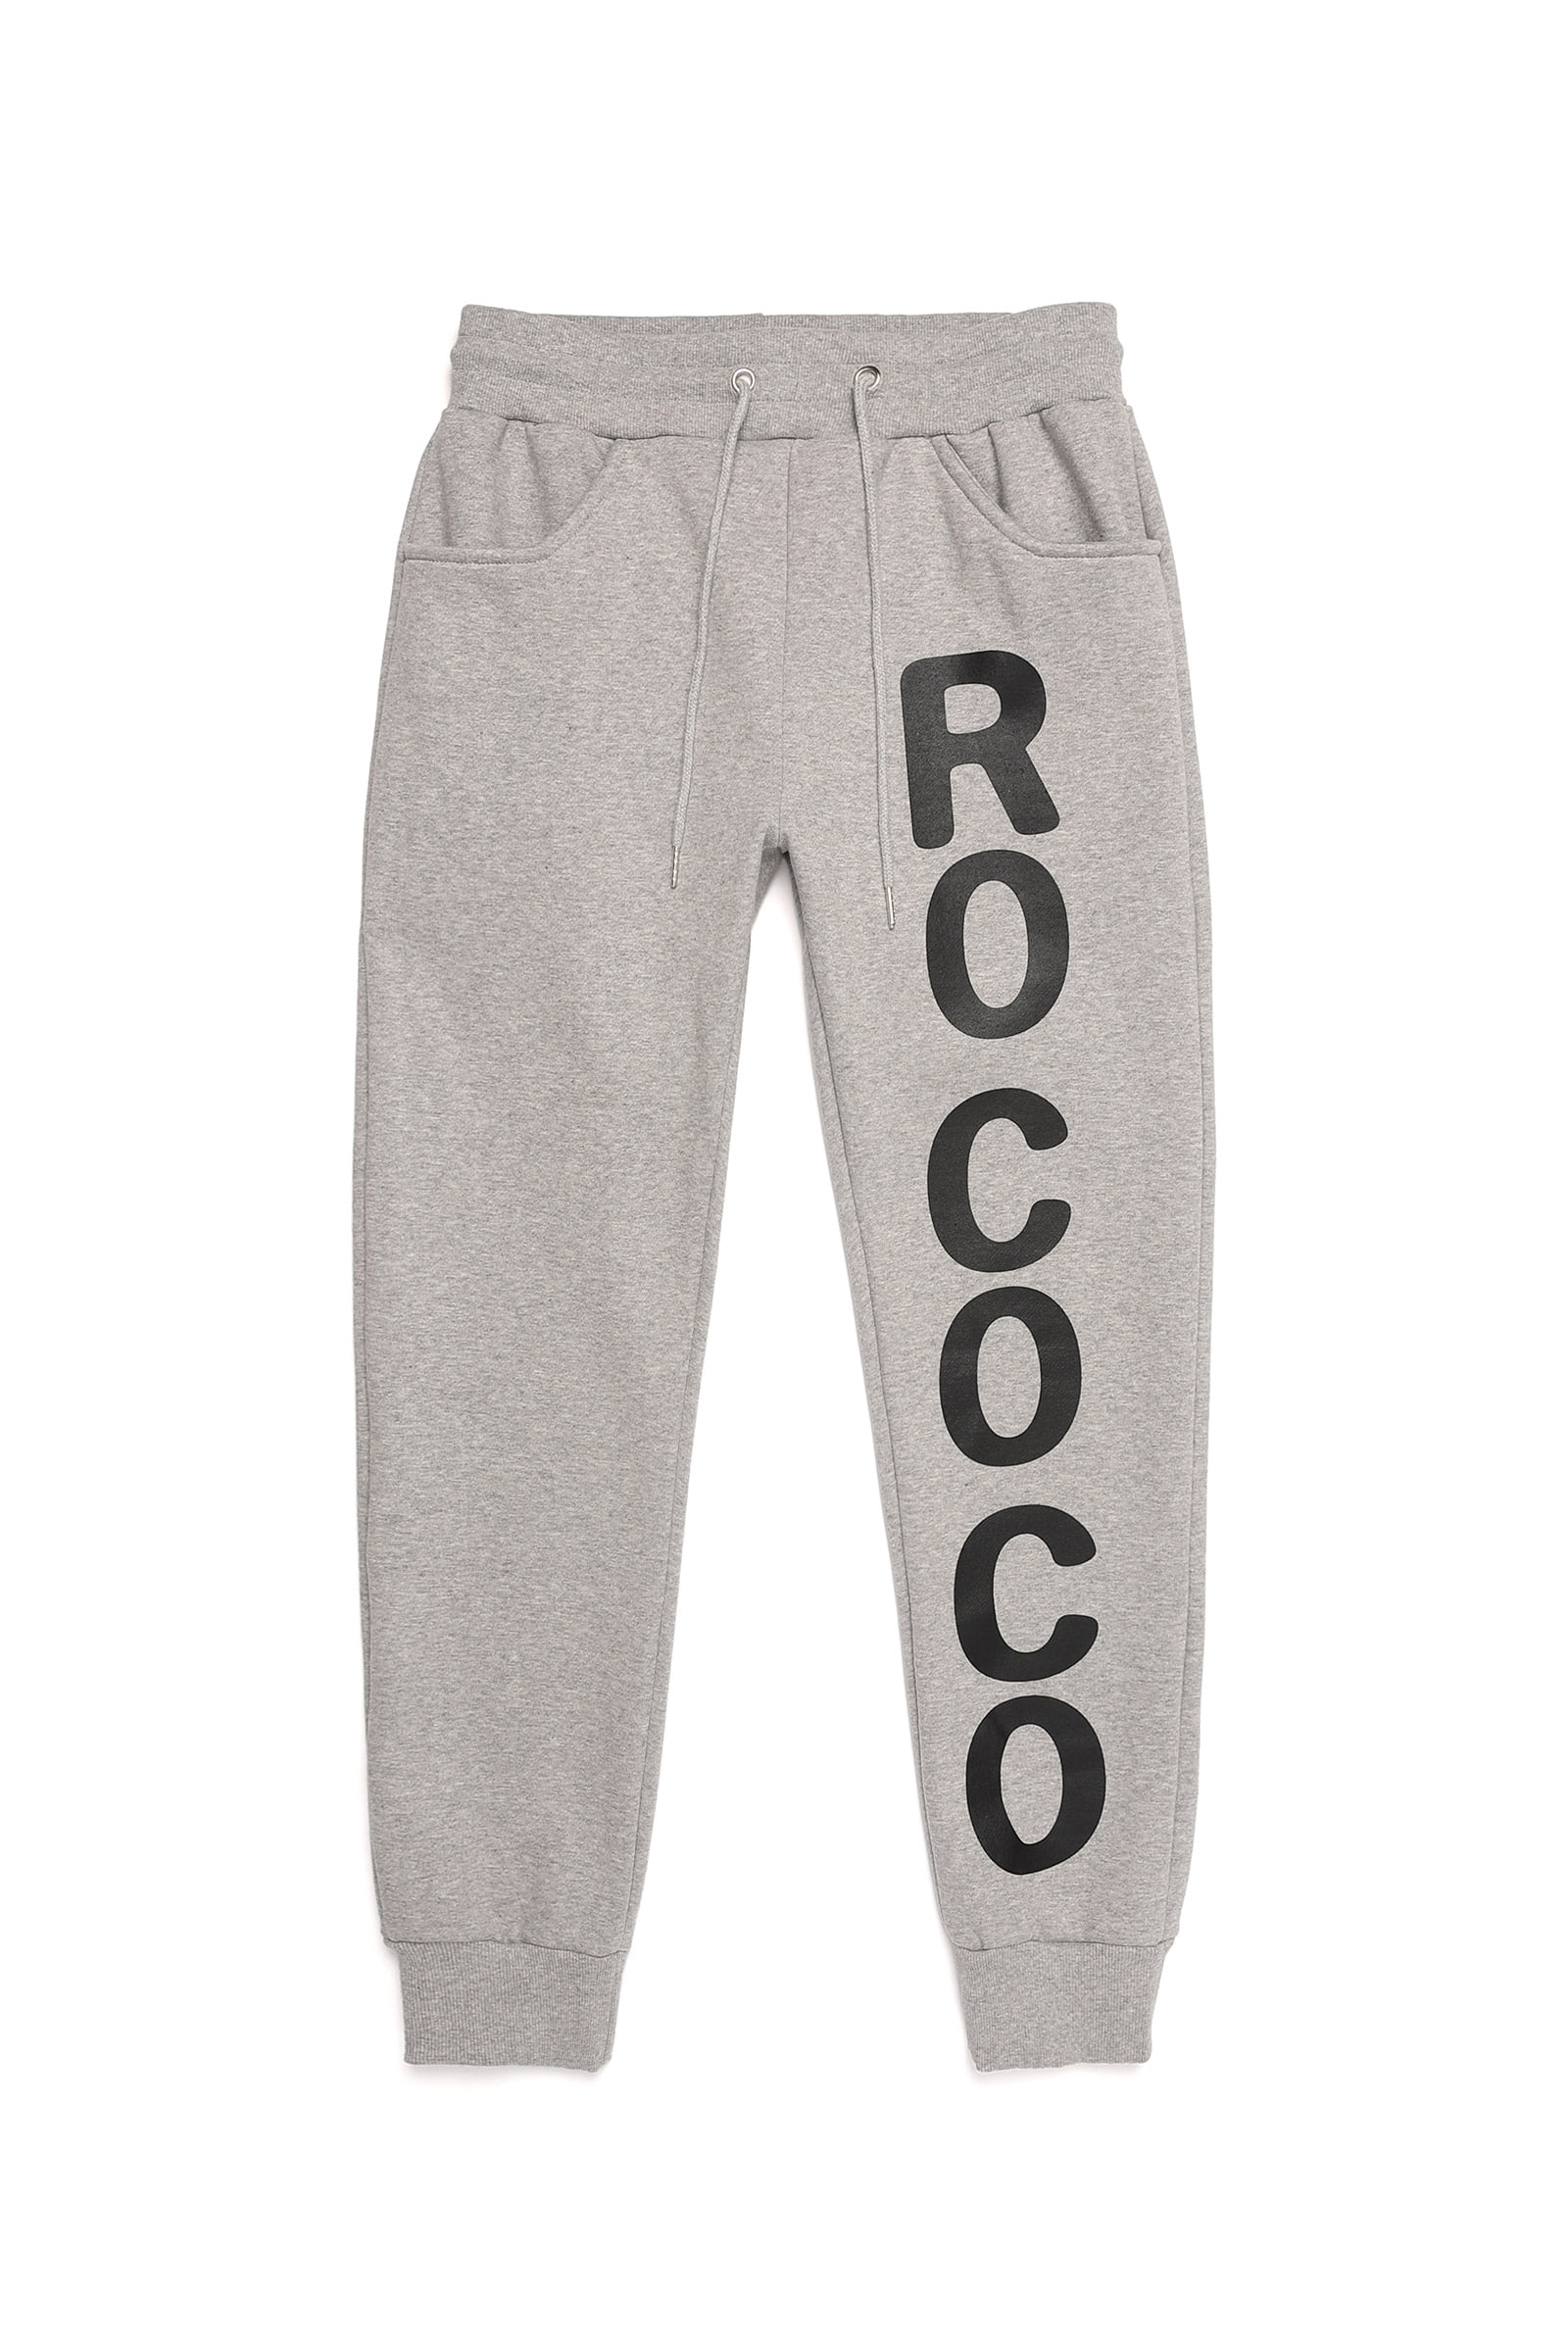 [ROCOROCO] ROCOCO PANTS gray